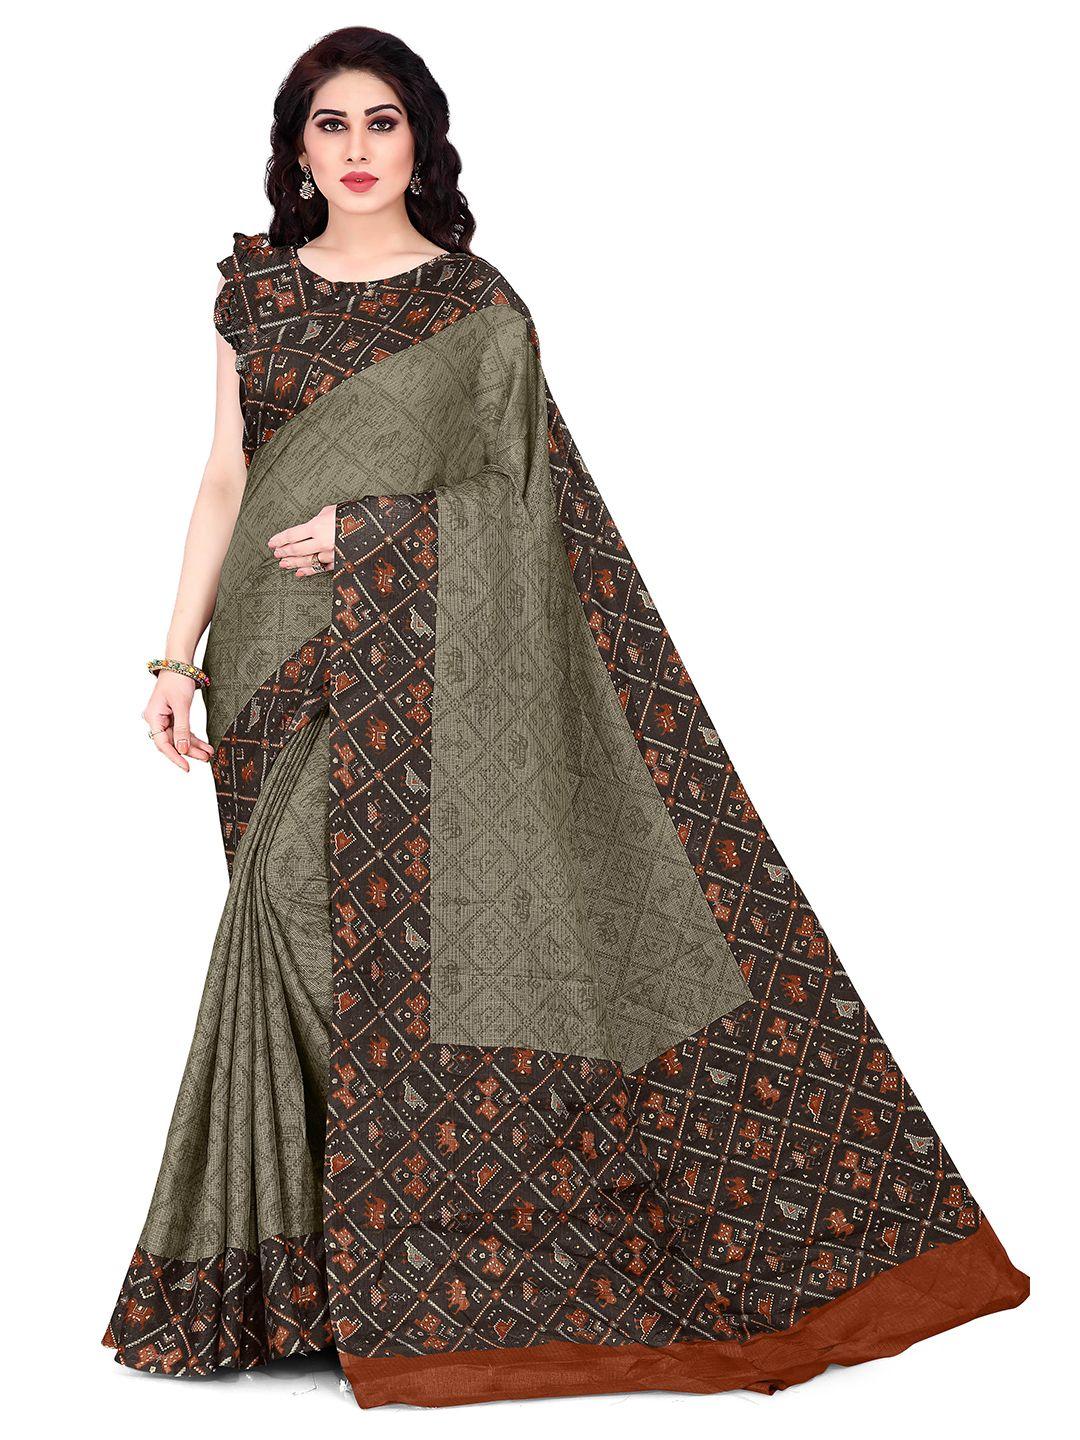 kalini khaki & brown embellished supernet saree